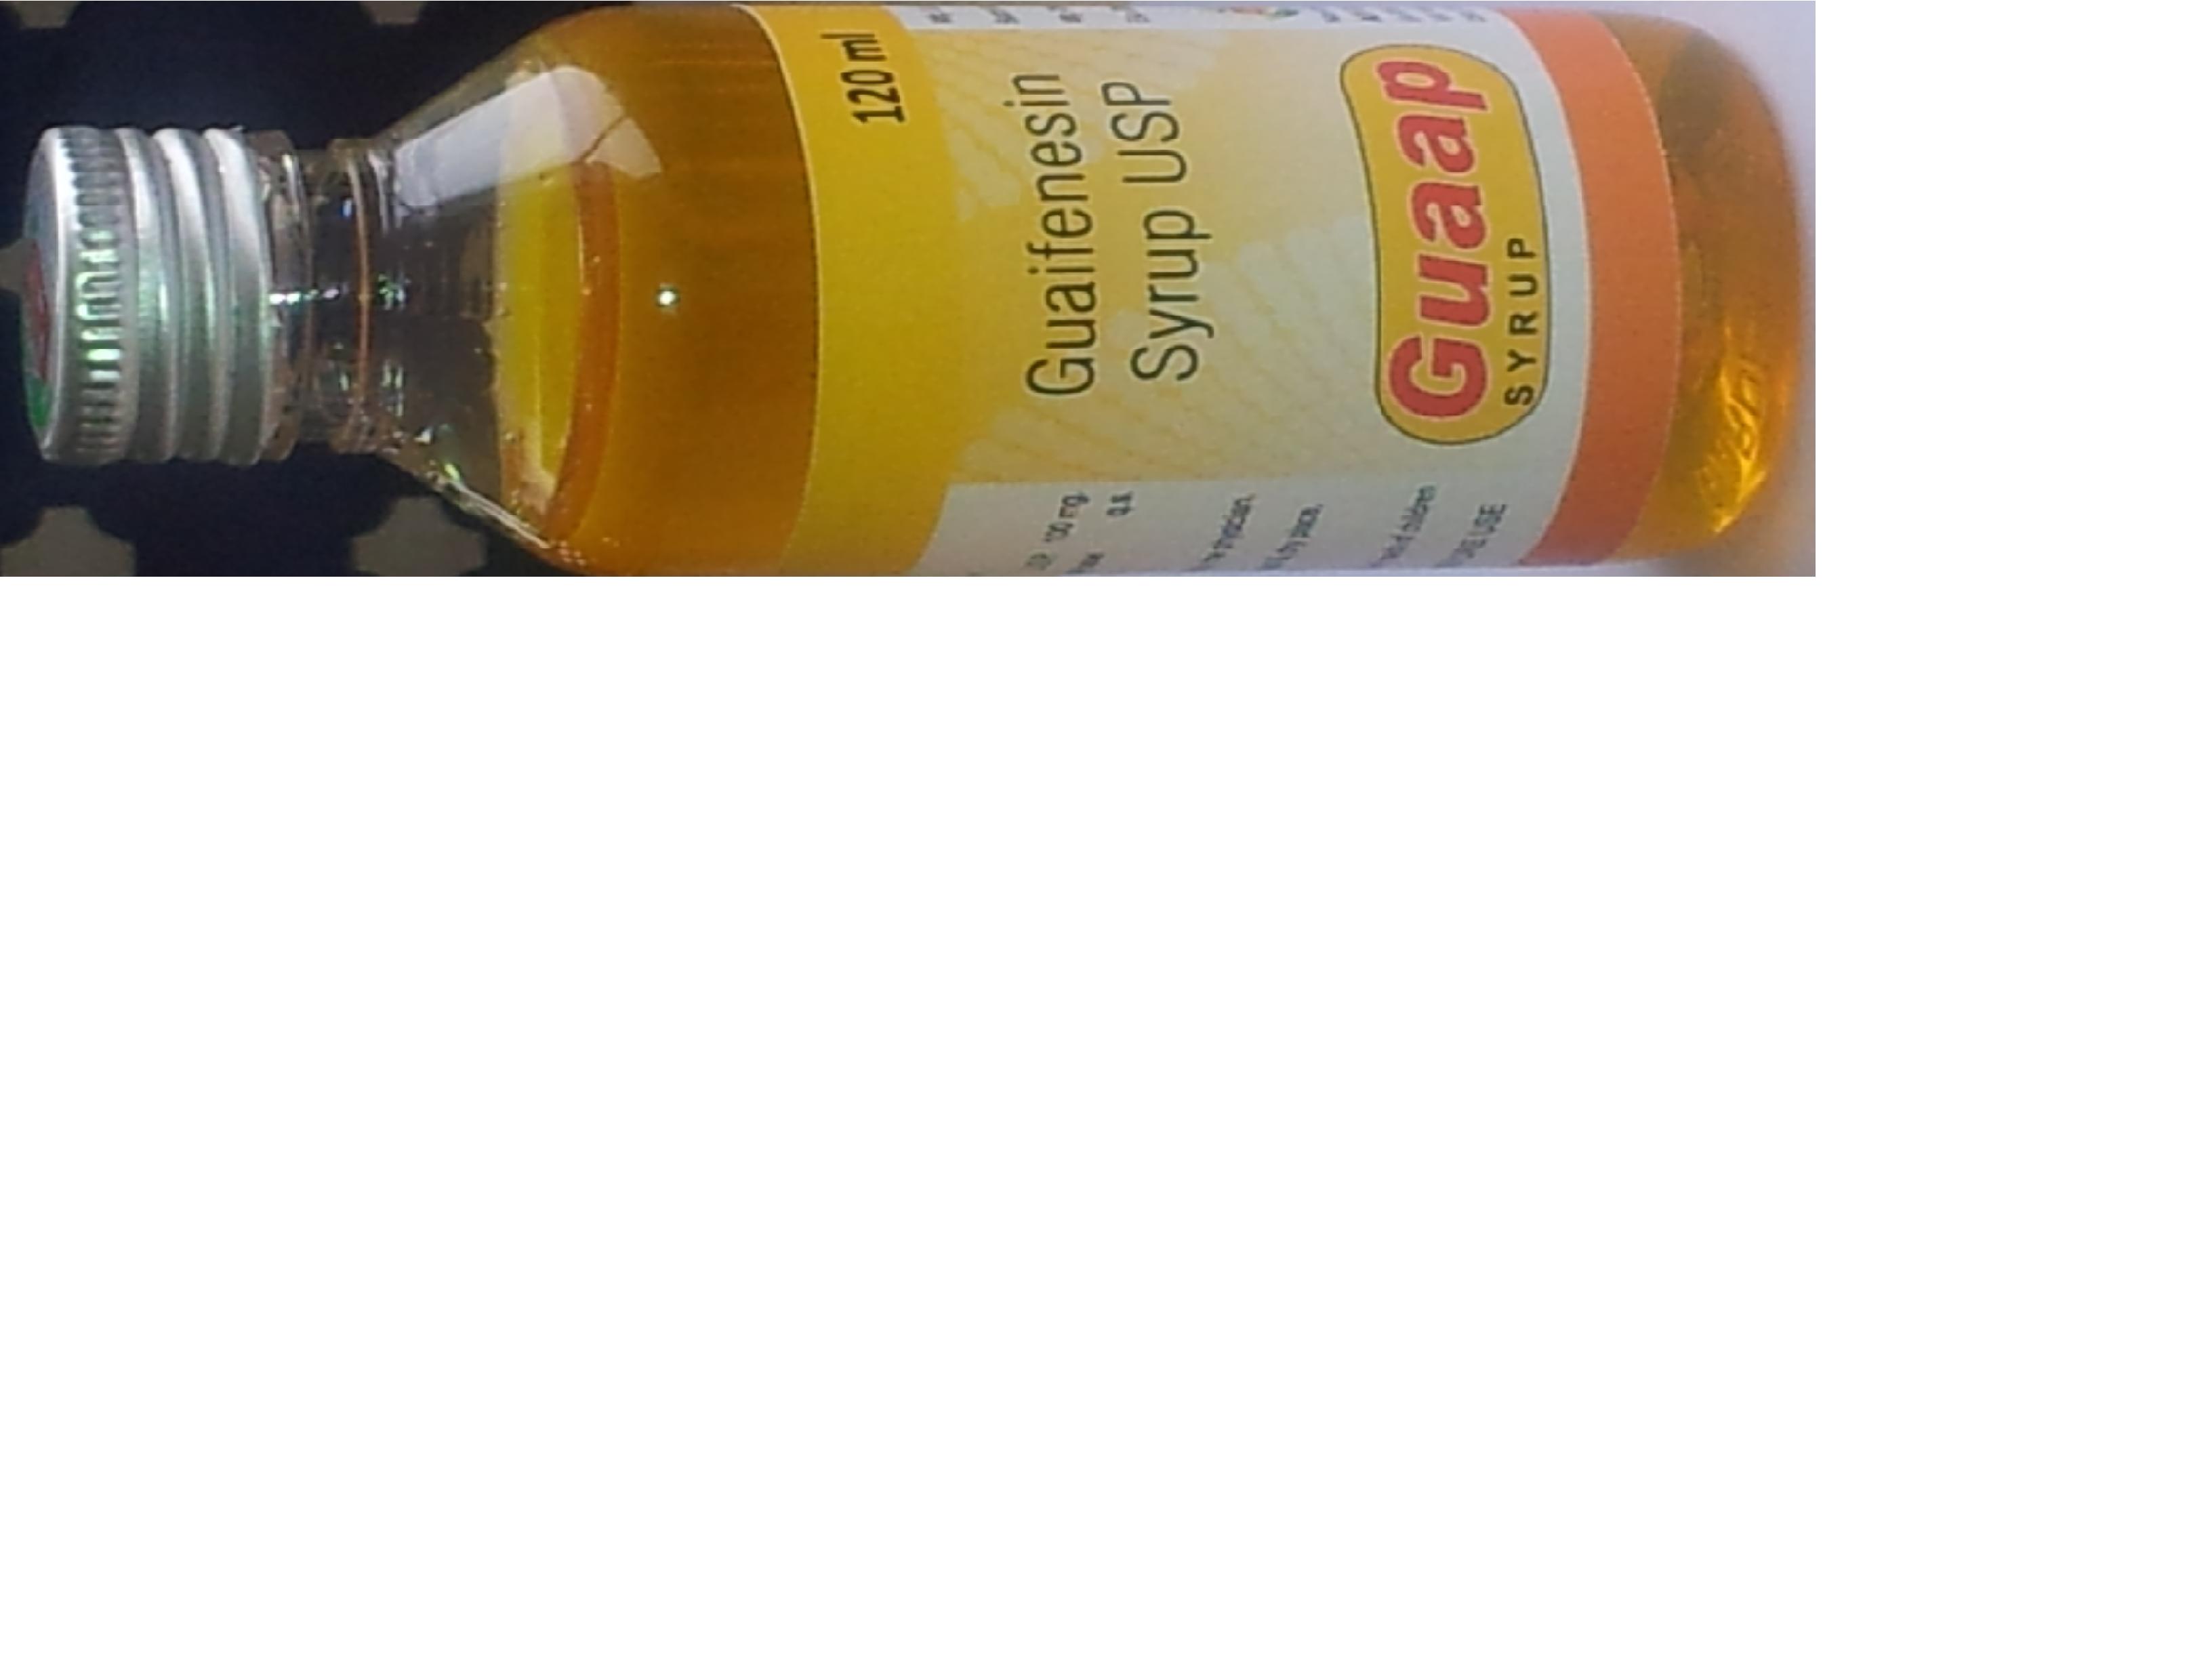 Guaap (Guaifenesin) Liquid [A P J Laboratories Limited]